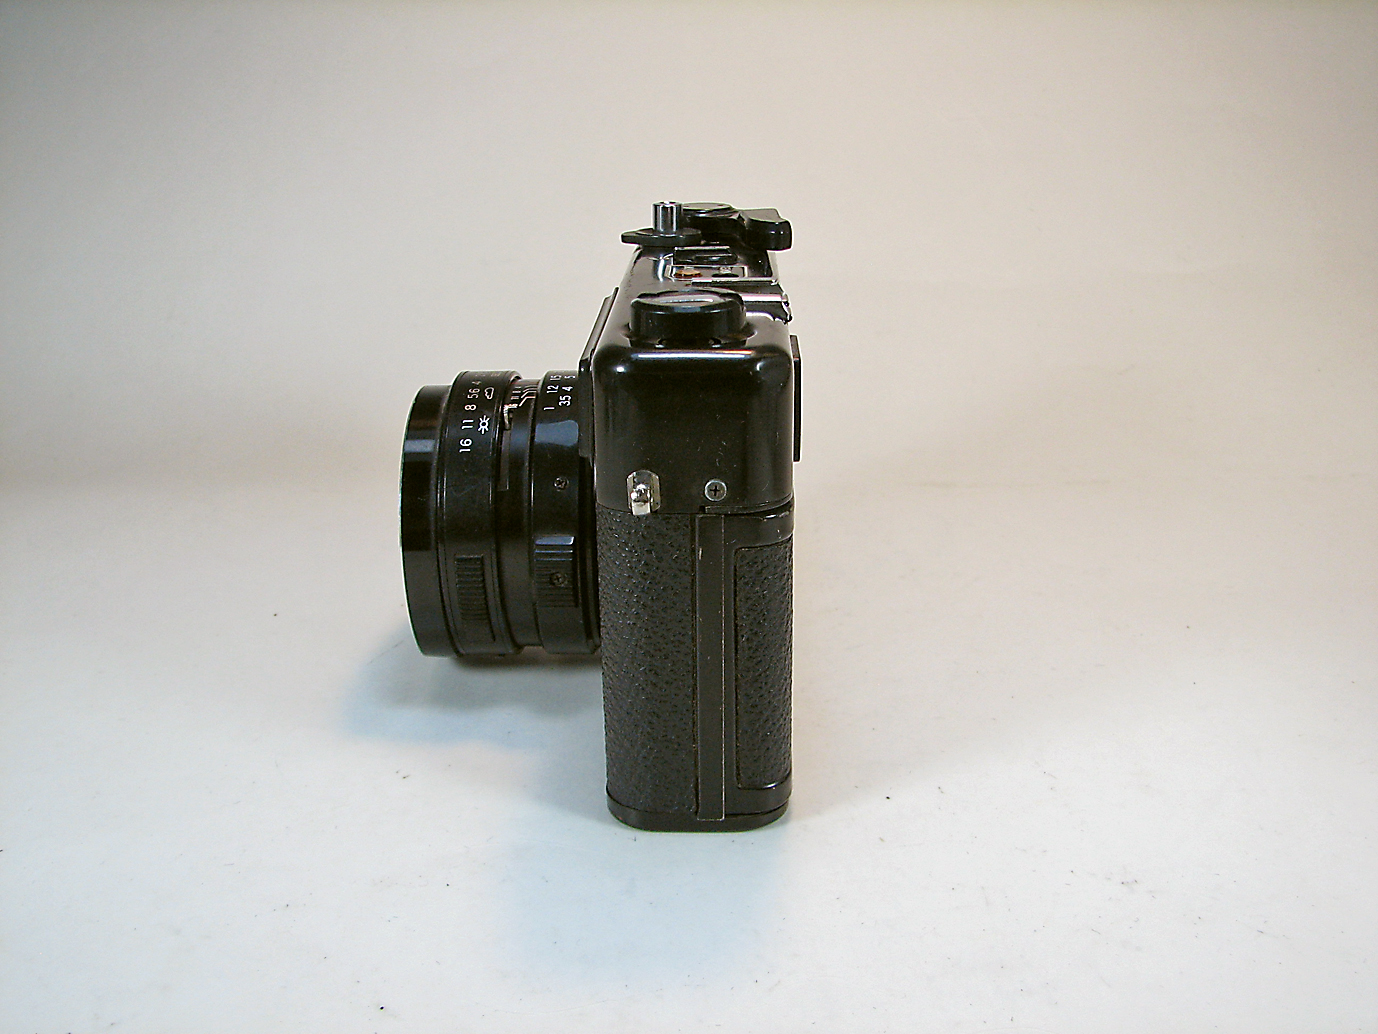 دوربین کلکسیونی YASHICA MG-1 رنگ مشکی